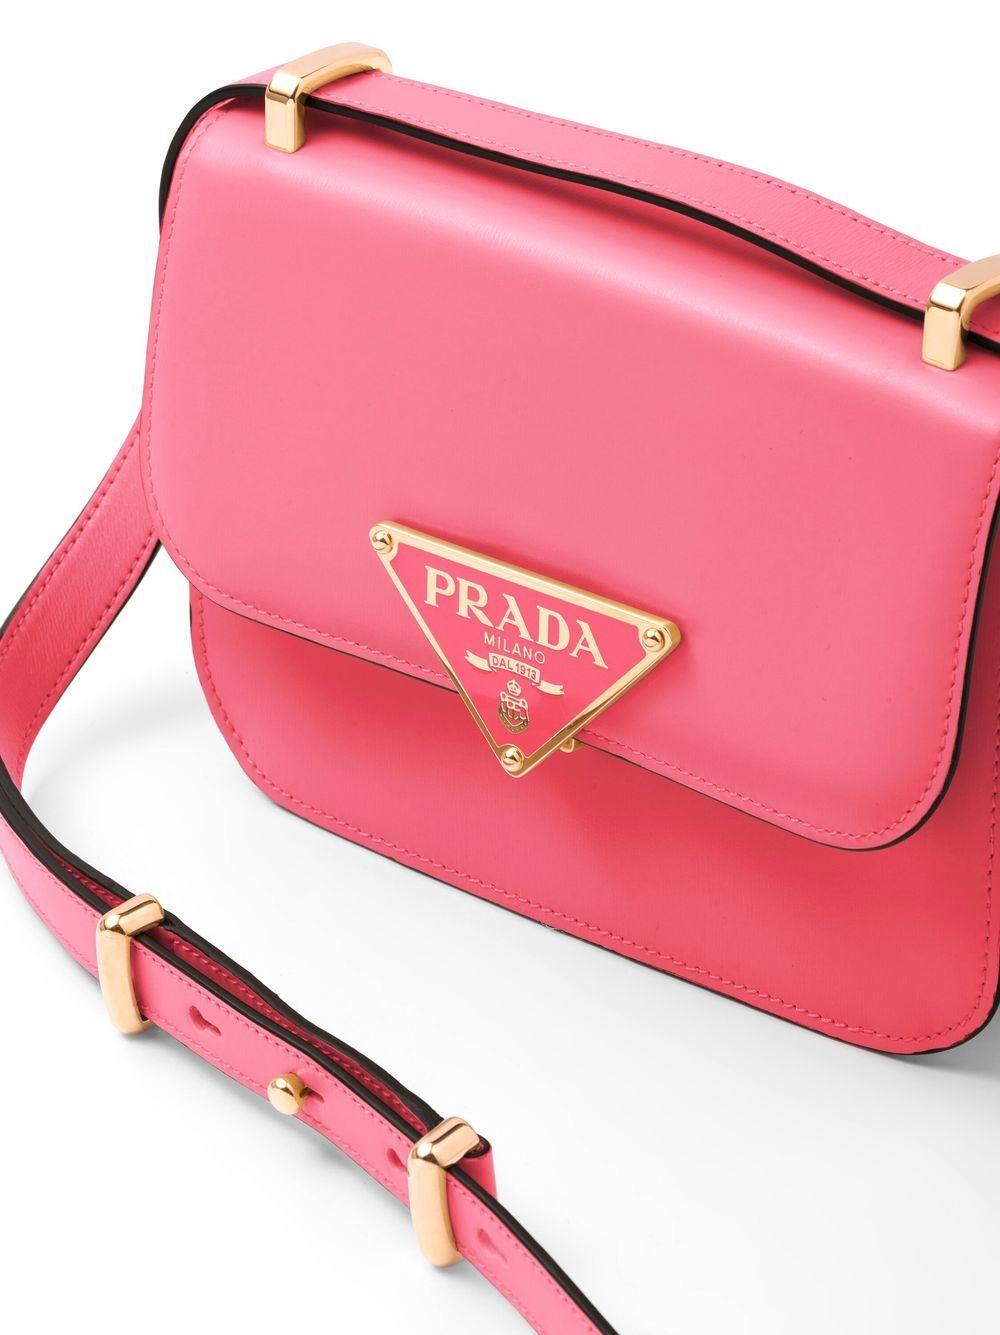 Prada Emblème Saffiano Leather Shoulder Bag in Pink | Lyst